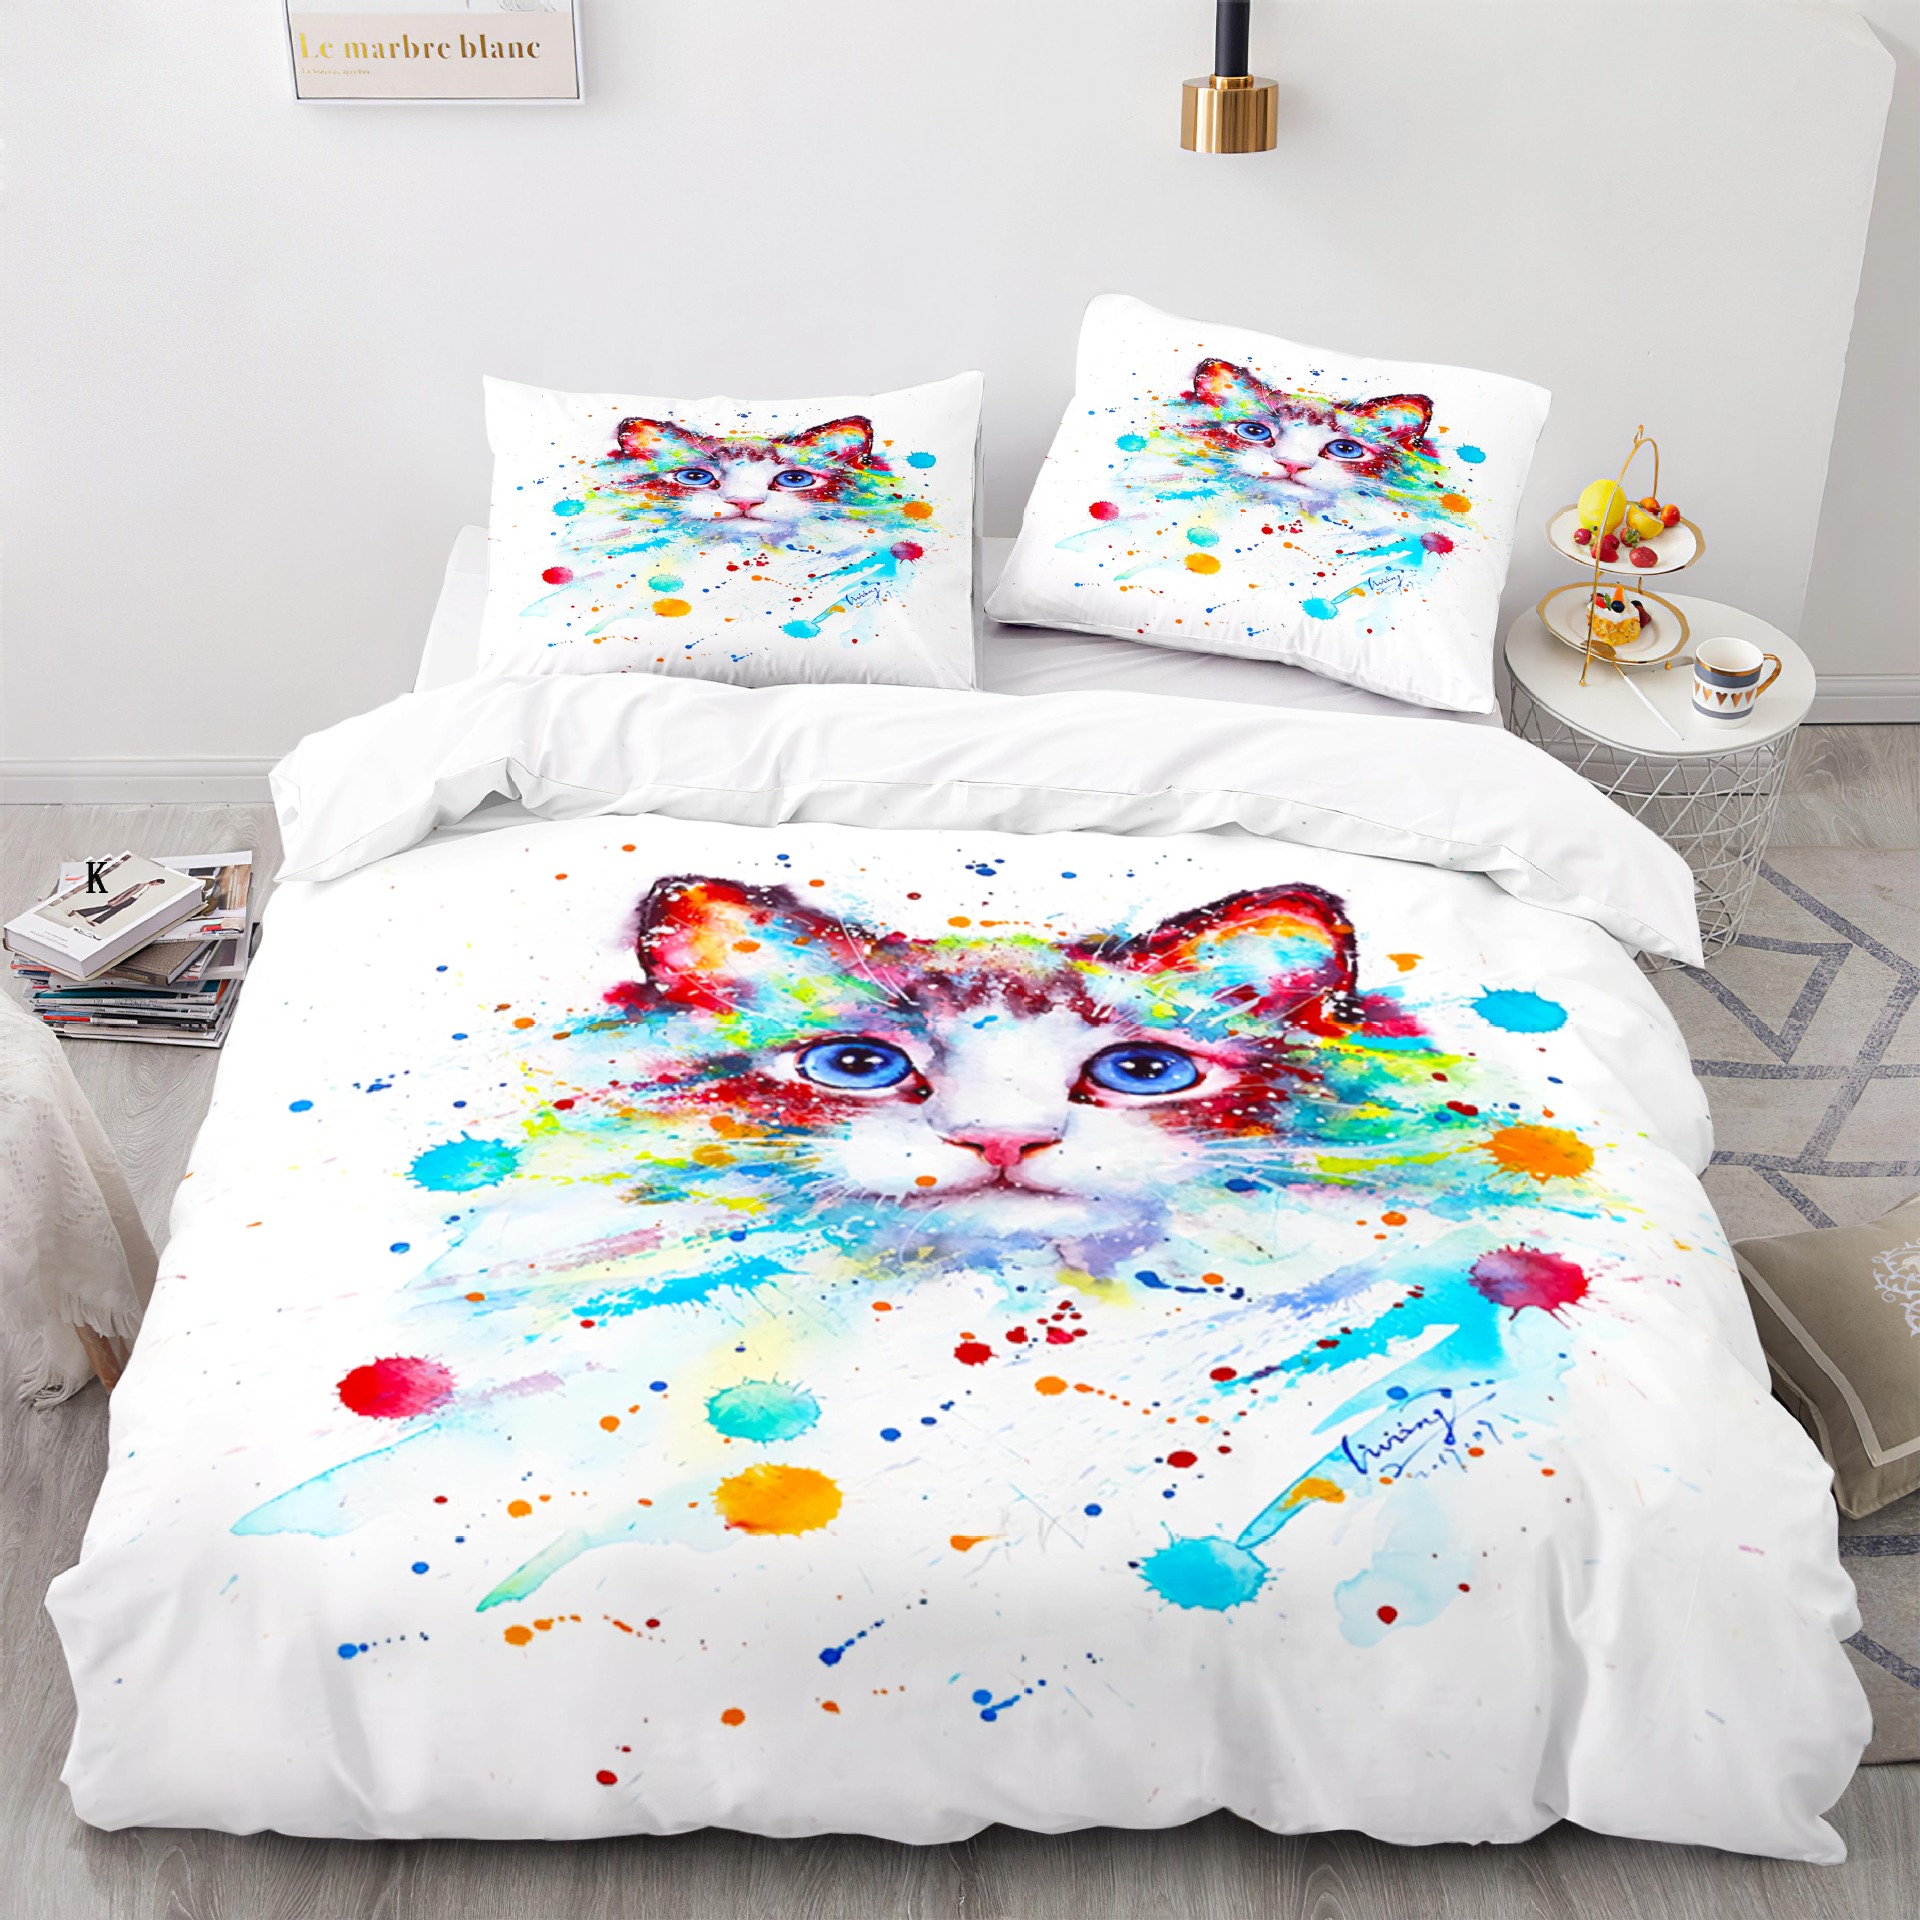 Buntes Katzen Bettwäsche Cover süßes Katzen Muster kreatives Farbdesign für Kinder Jungen Mädchen Schlafzimmer Dekorative Tiere Königin King King